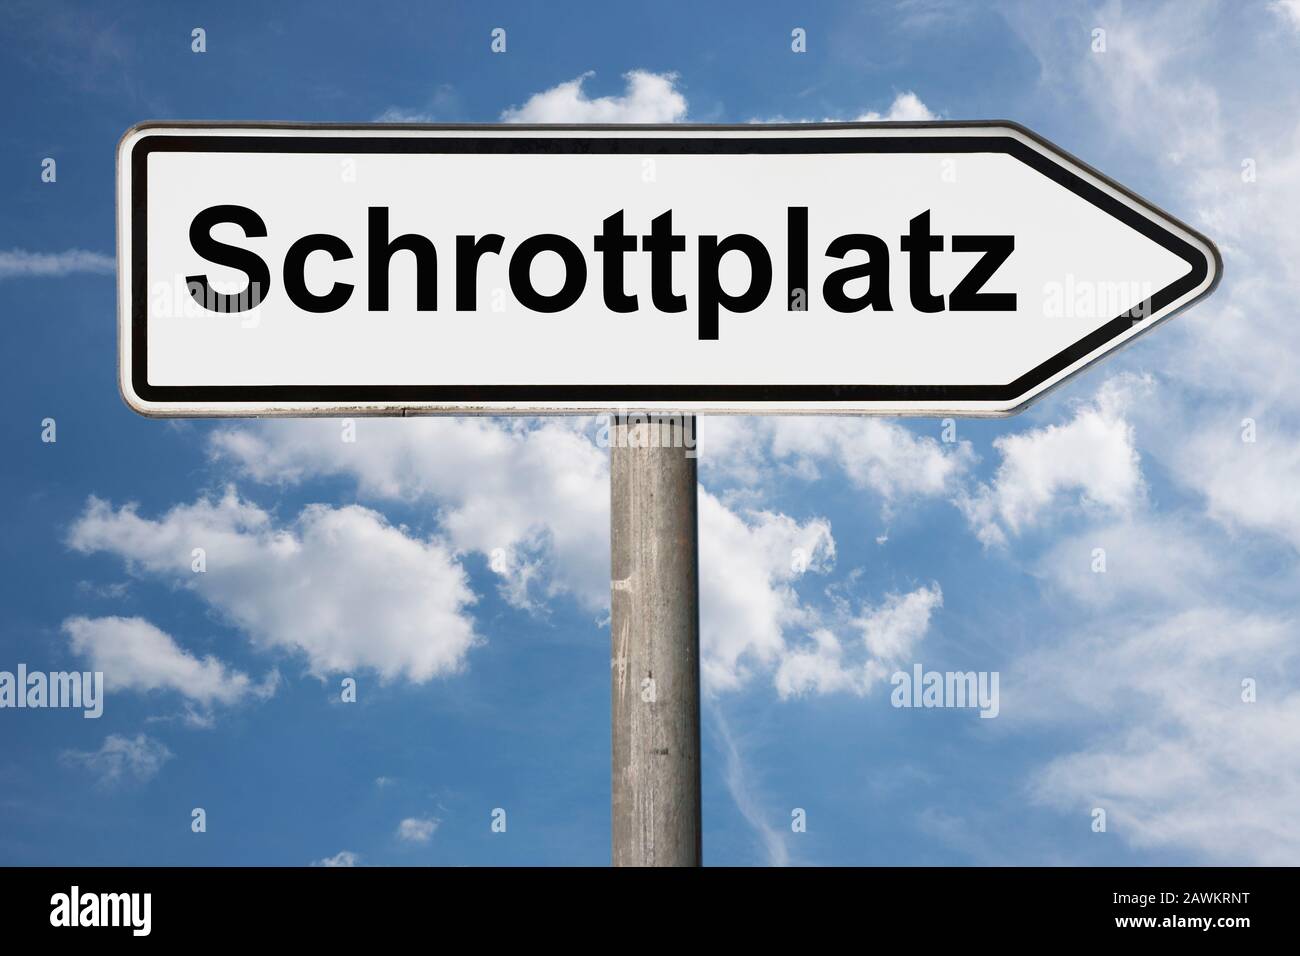 Detailfoto eines Wegweisers mit der Aufschrift Schrottplatz (Junkyard) Stockfoto